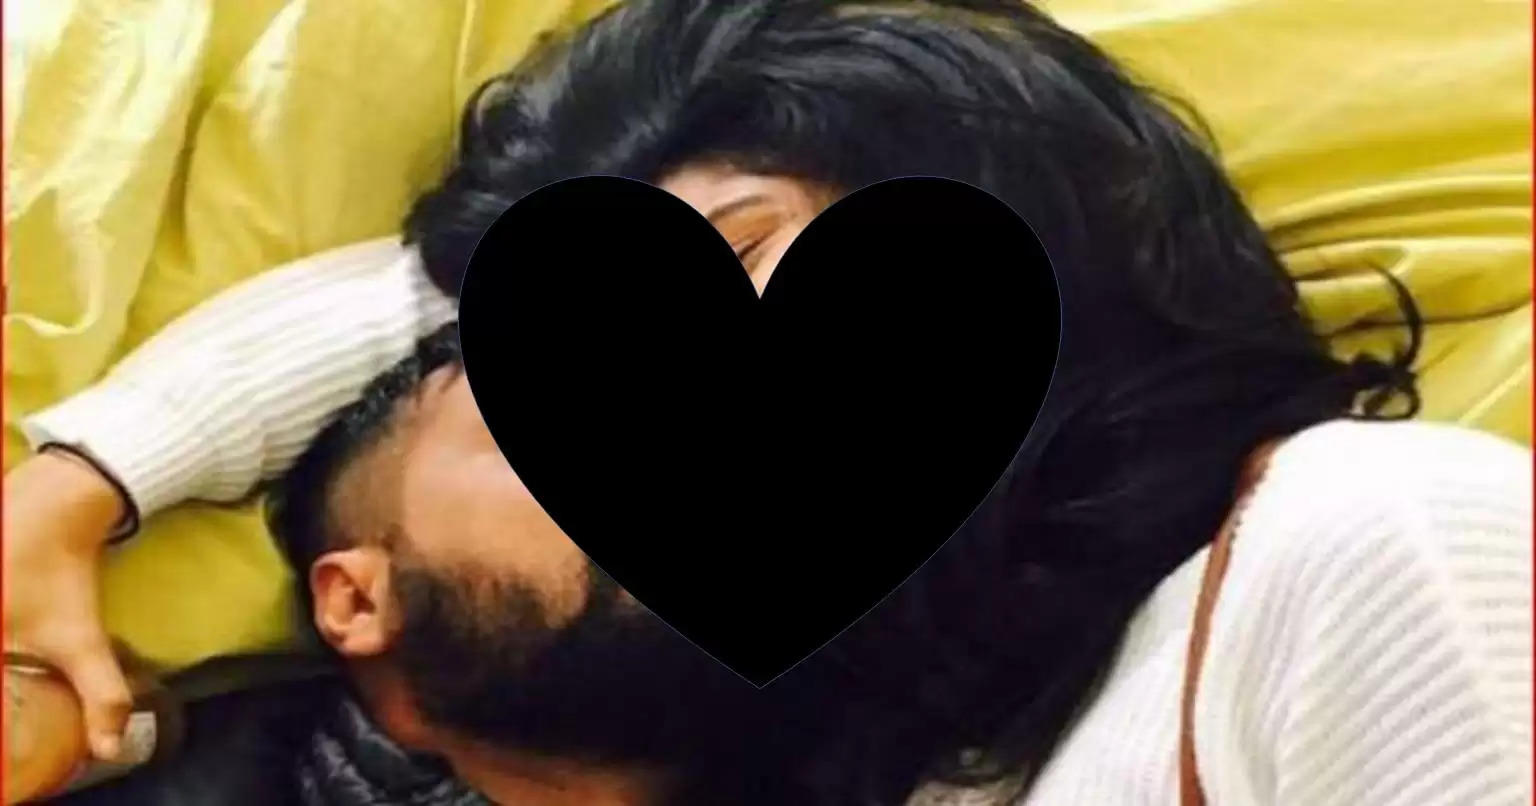 अनुराग कश्यप ने 22 साल छोटी गर्लफ्रेंड के साथ पोस्ट की इंटीमेट तस्वीरें, हो रही हैं वायरल!